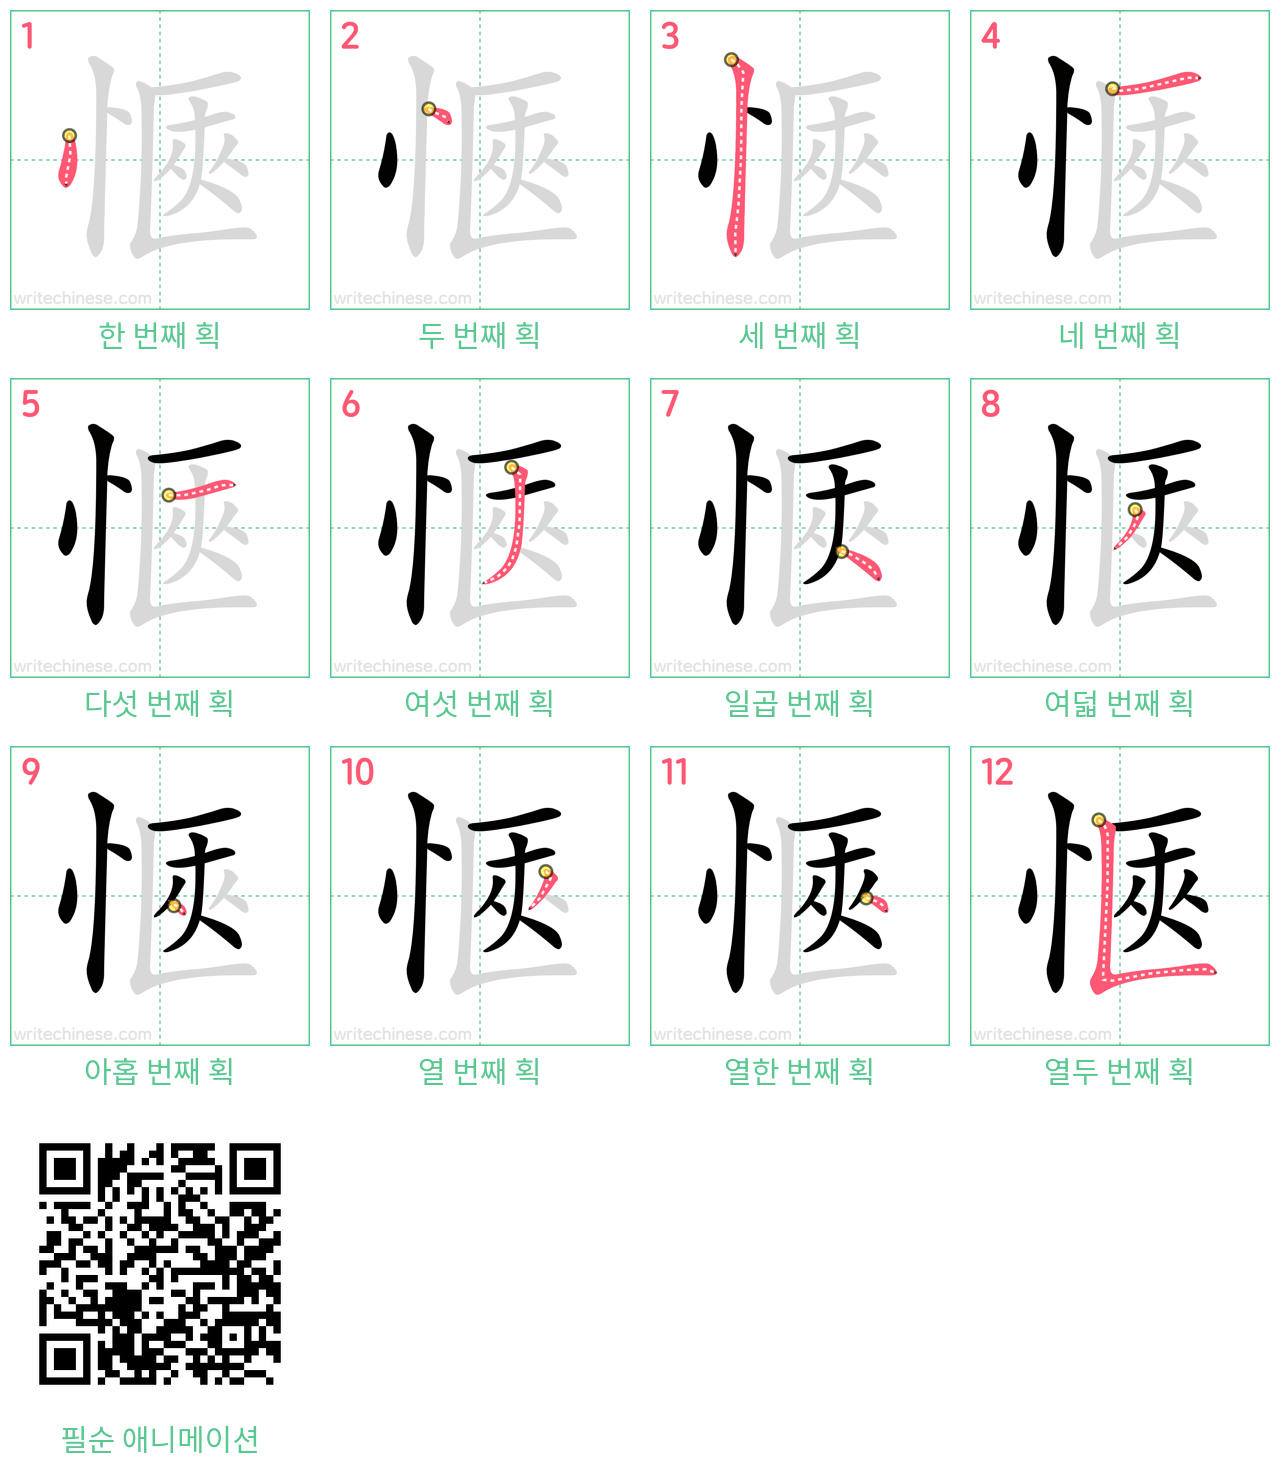 愜 step-by-step stroke order diagrams